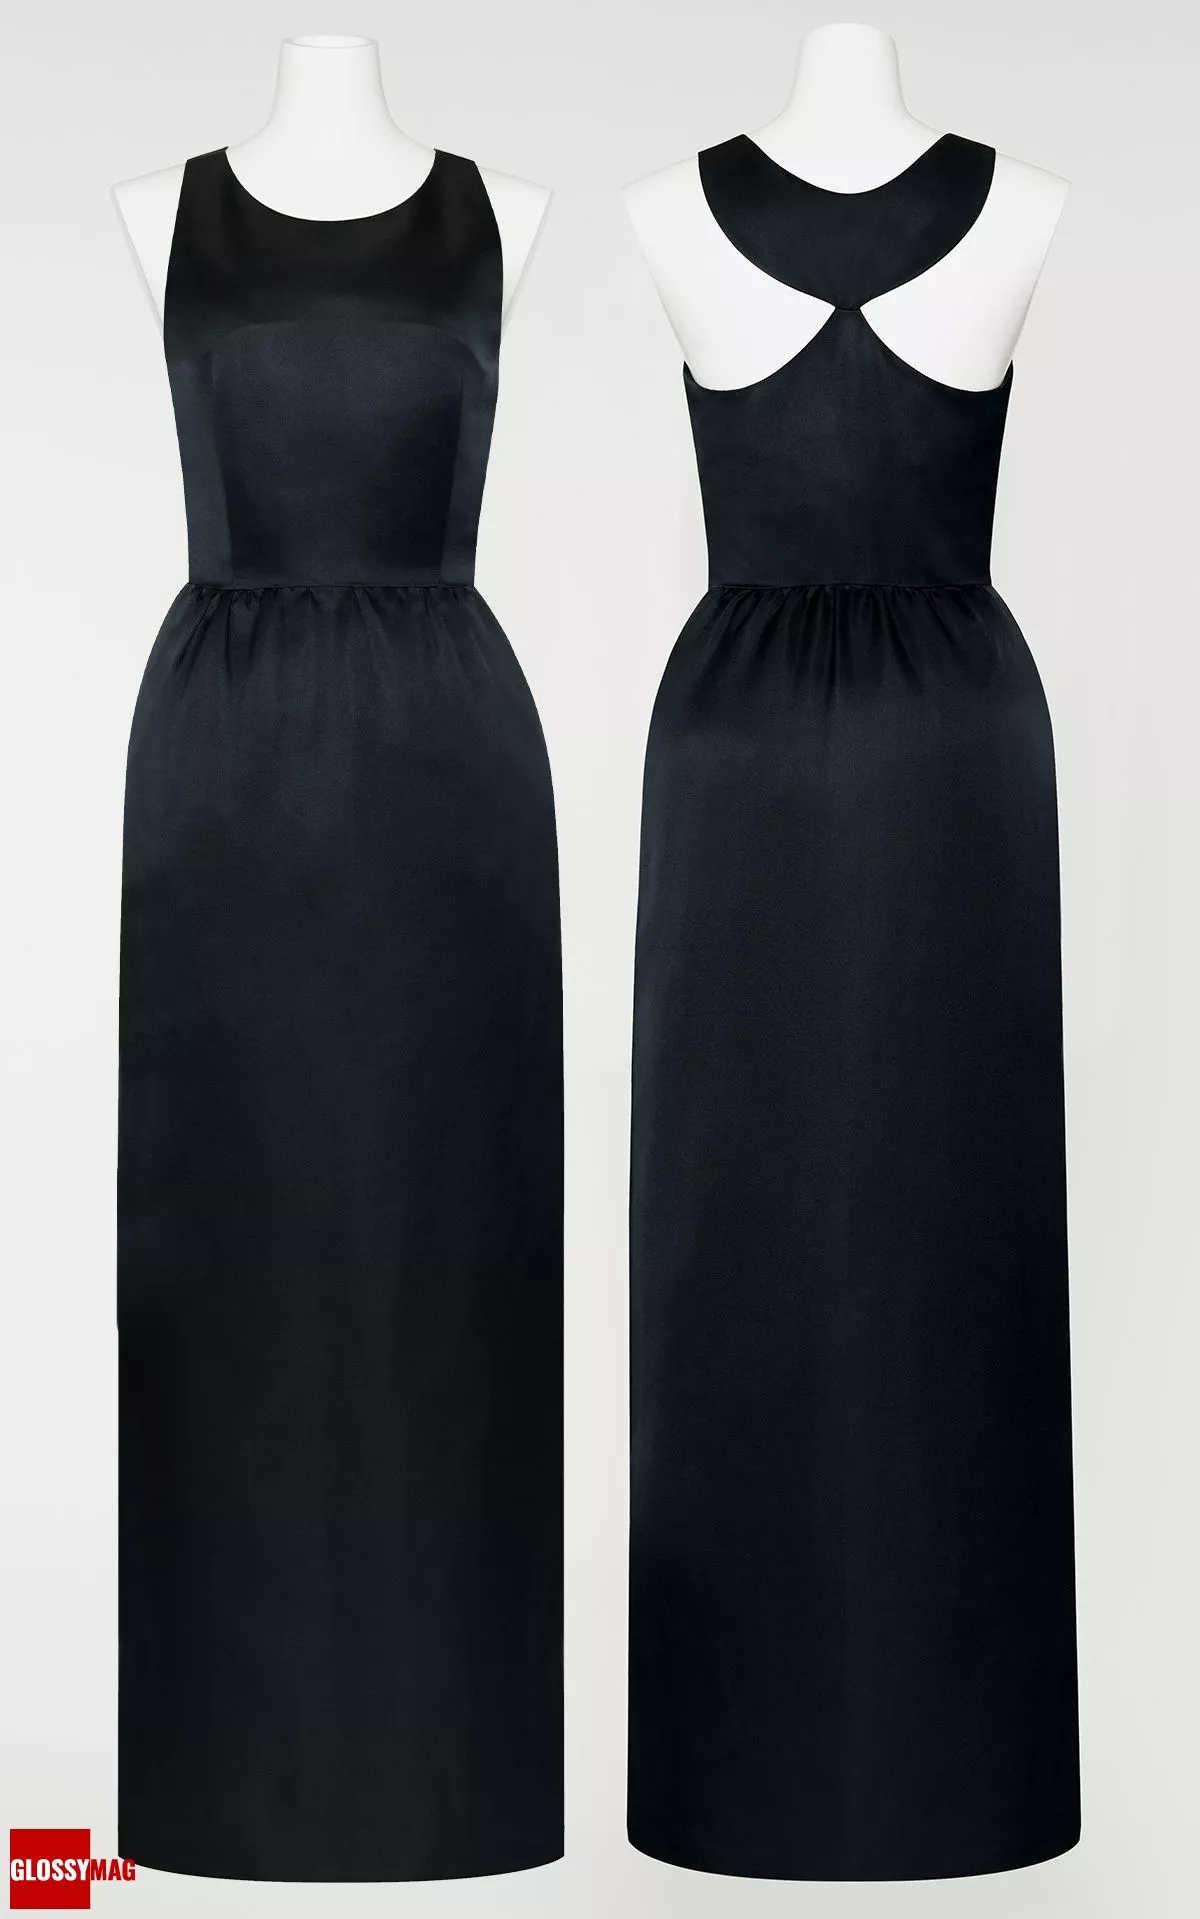 Знаменитое черное платье от Givenchy, в котором Одри Хепберн стояла у витрины ювелирного магазина в фильме «Завтрак у Тиффани», фото 1